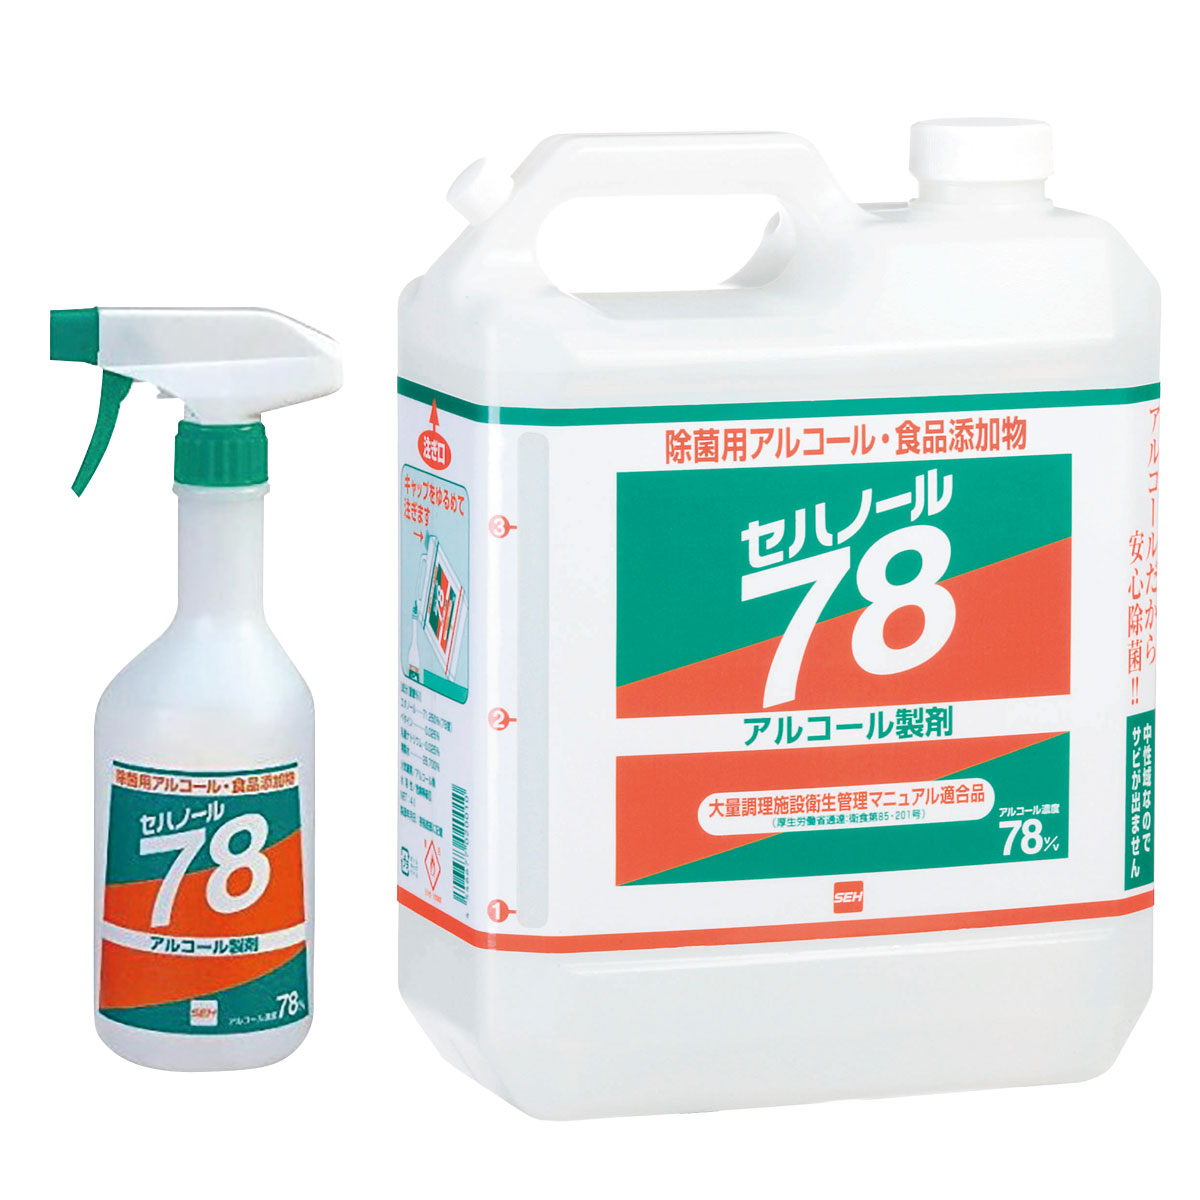 セハノール78 除菌用アルコール 500ml 【通販】ストア・エキスプレス